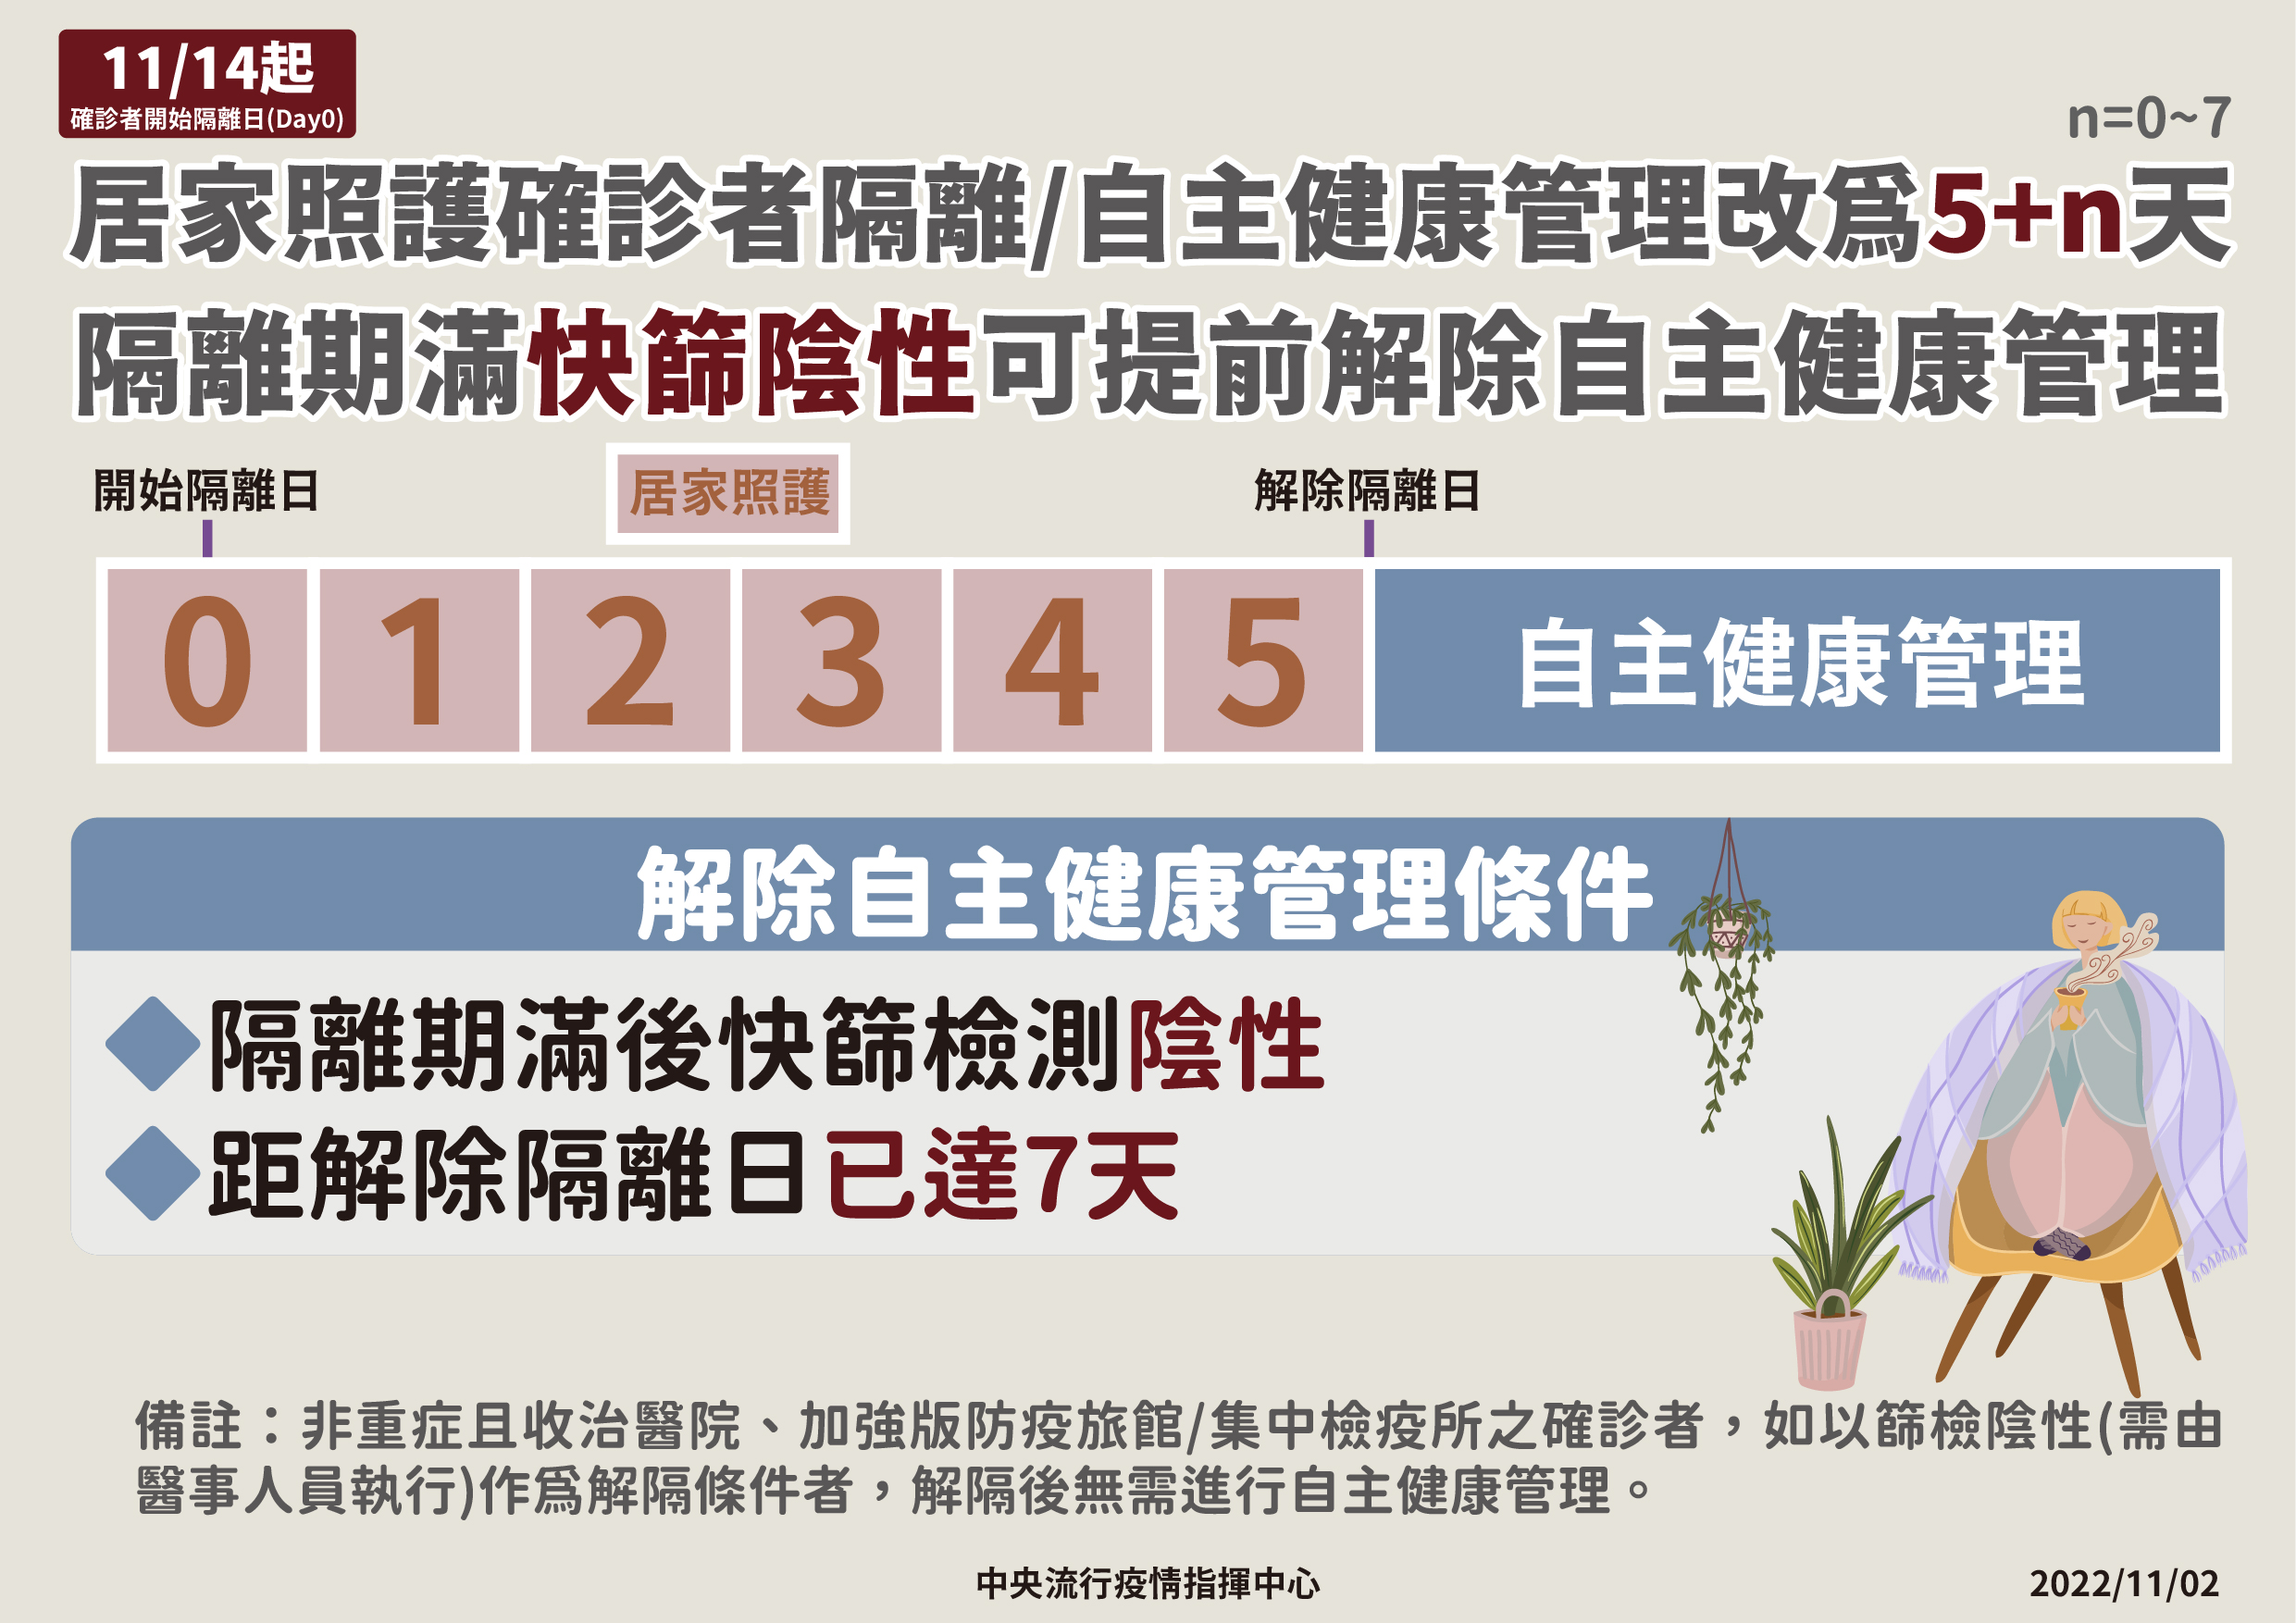 11月14日起居家照護確診者隔離 自主健康管理改為5+n天(中文).jpg